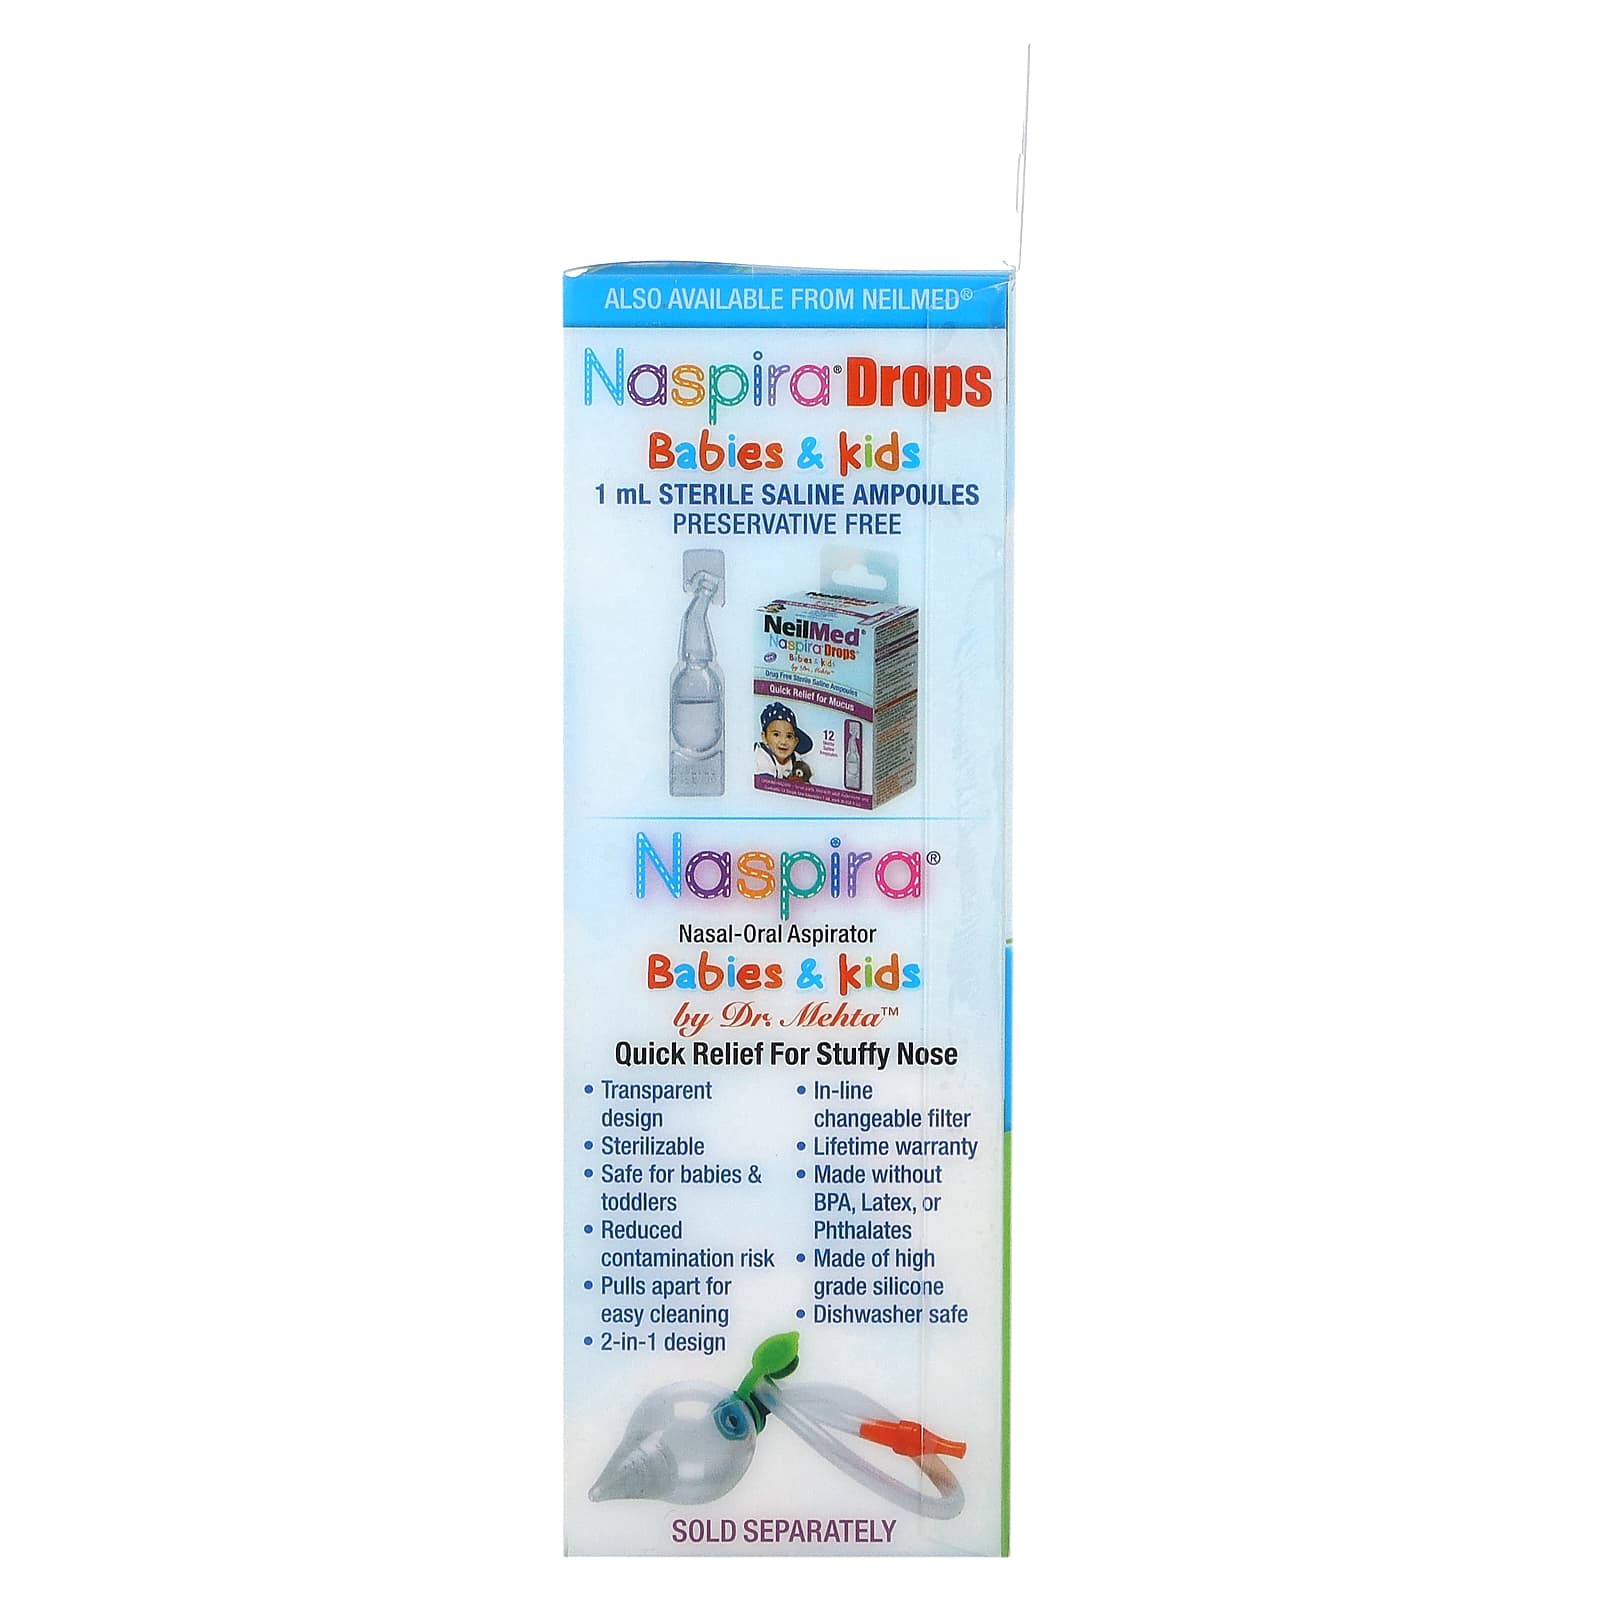 Neilmed NeoBulb Sterile Oral-Nasal Bulb Aspirator, Doctor Developed, Food Grade